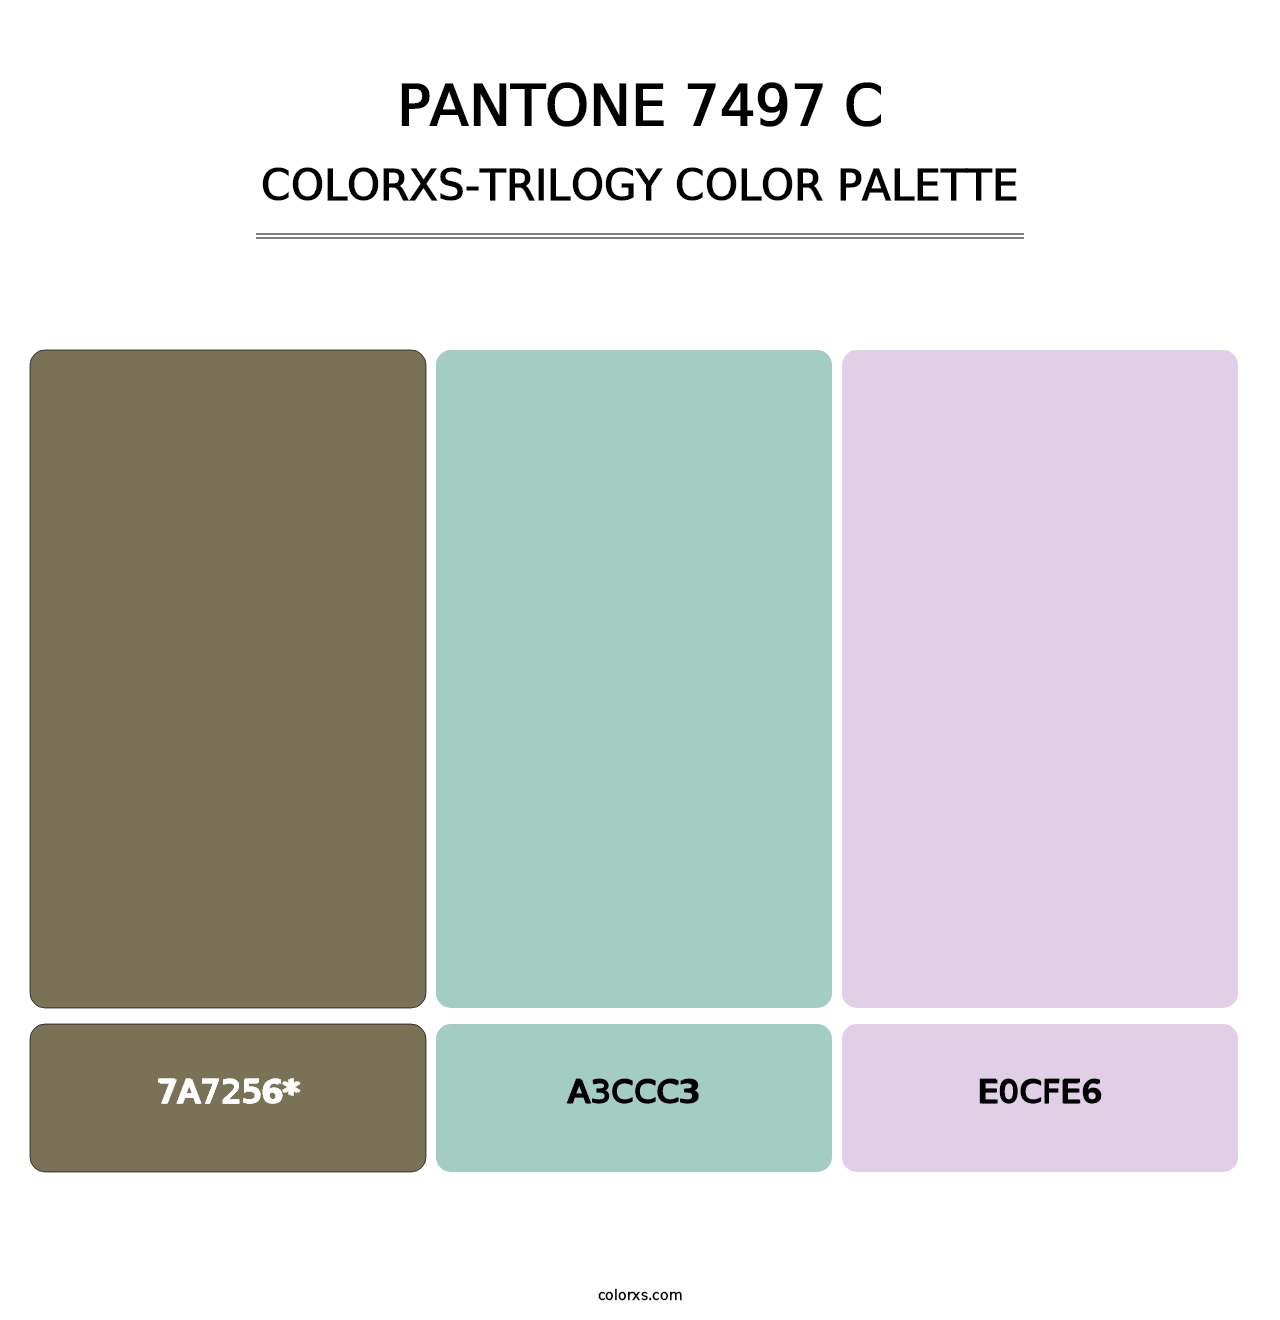 PANTONE 7497 C - Colorxs Trilogy Palette